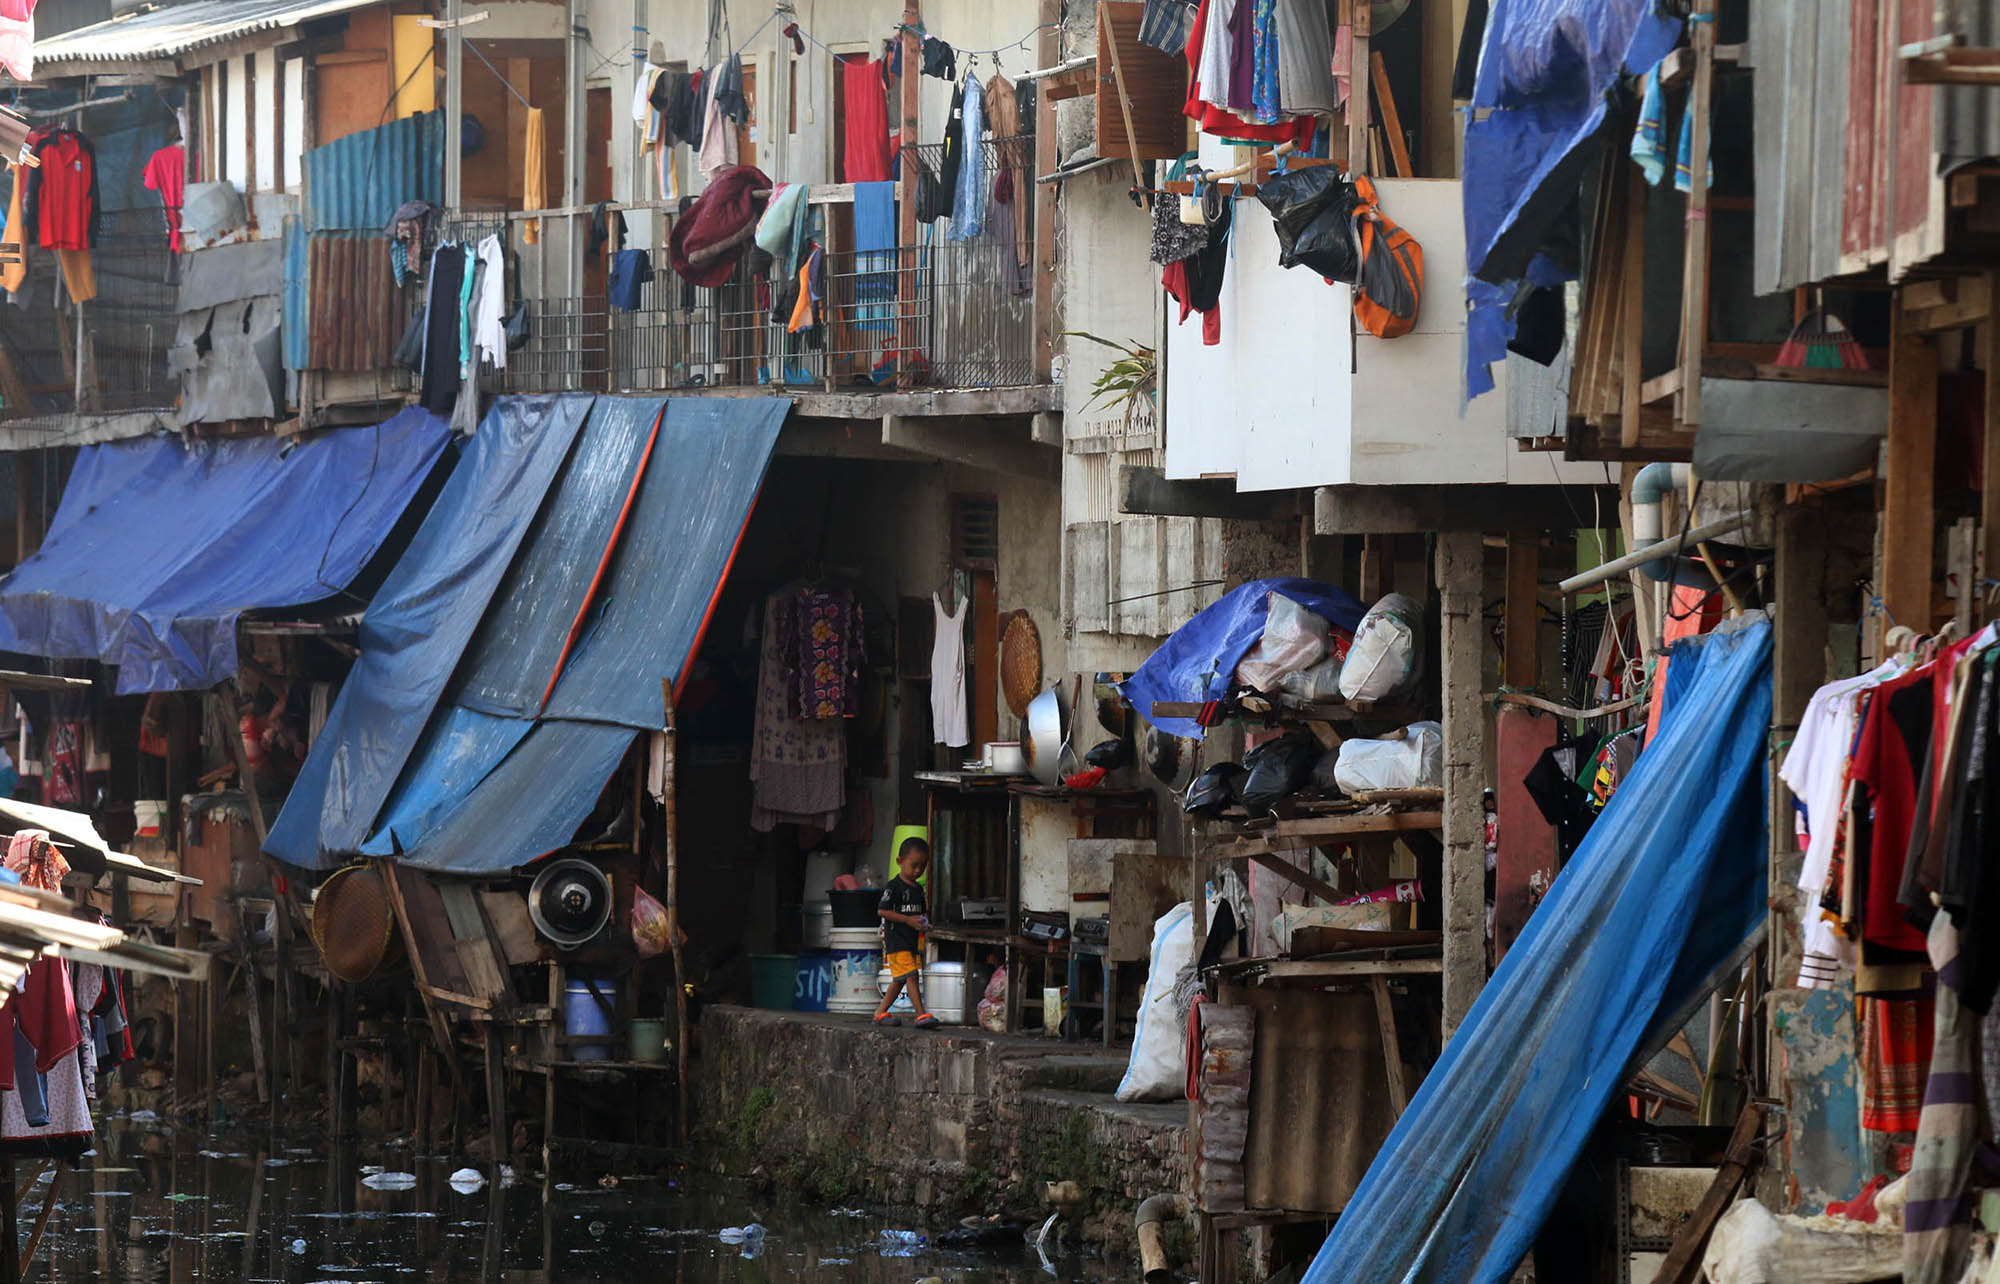 <p>Ilustrasi: Suasana pemukiman padat warga di kawasan Kebun Melati, Tanah Abang, Jakarta Pusat. Foto: Ismail Pohan/TrenAsia</p>
